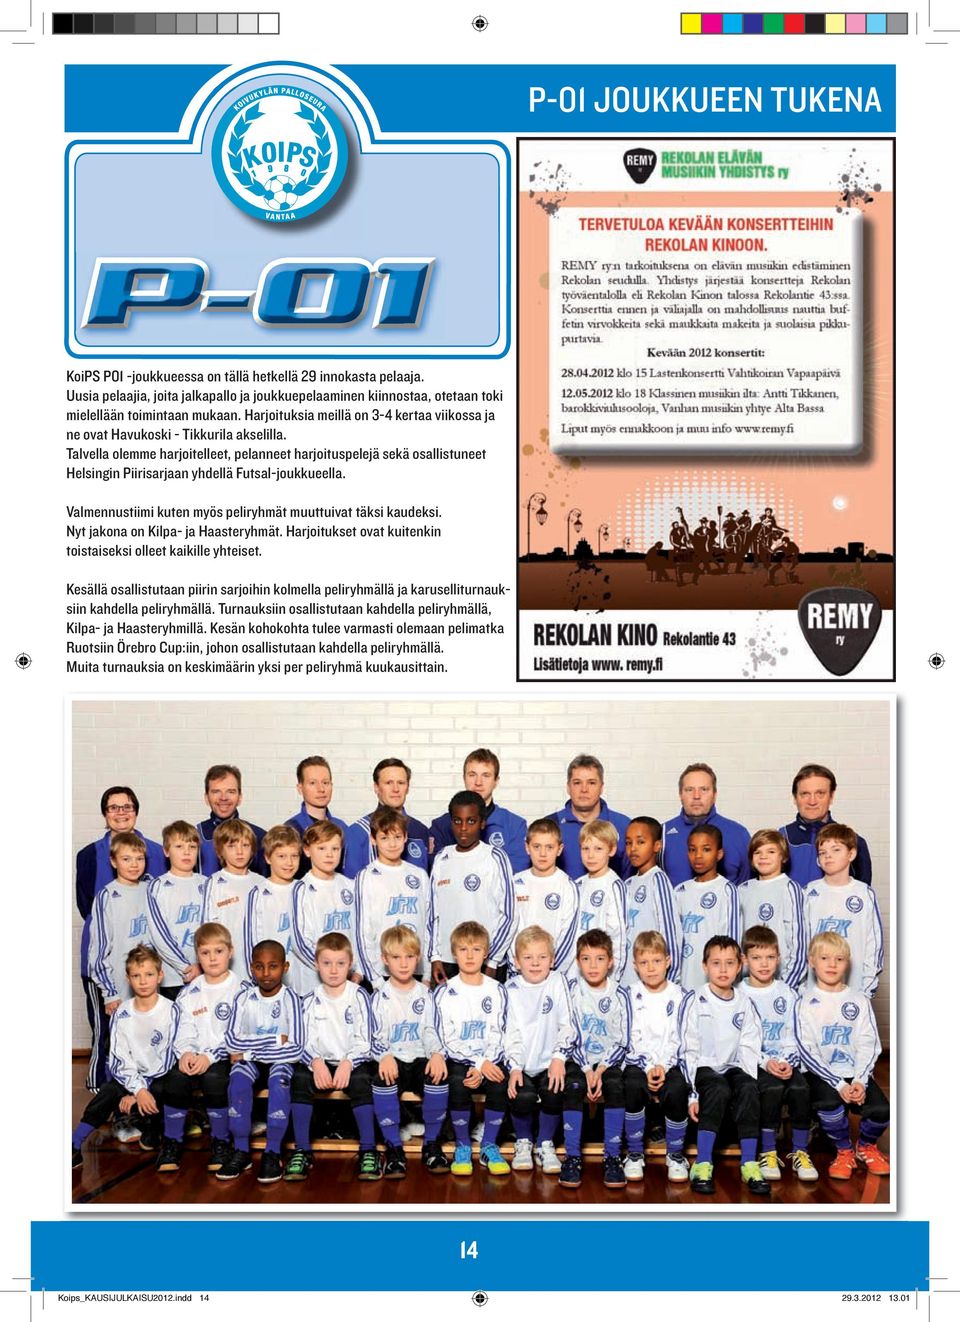 Talvella olemme harjoitelleet, pelanneet harjoituspelejä sekä osallistuneet Helsingin Piirisarjaan yhdellä Futsal-joukkueella. Valmennustiimi kuten myös peliryhmät muuttuivat täksi kaudeksi.